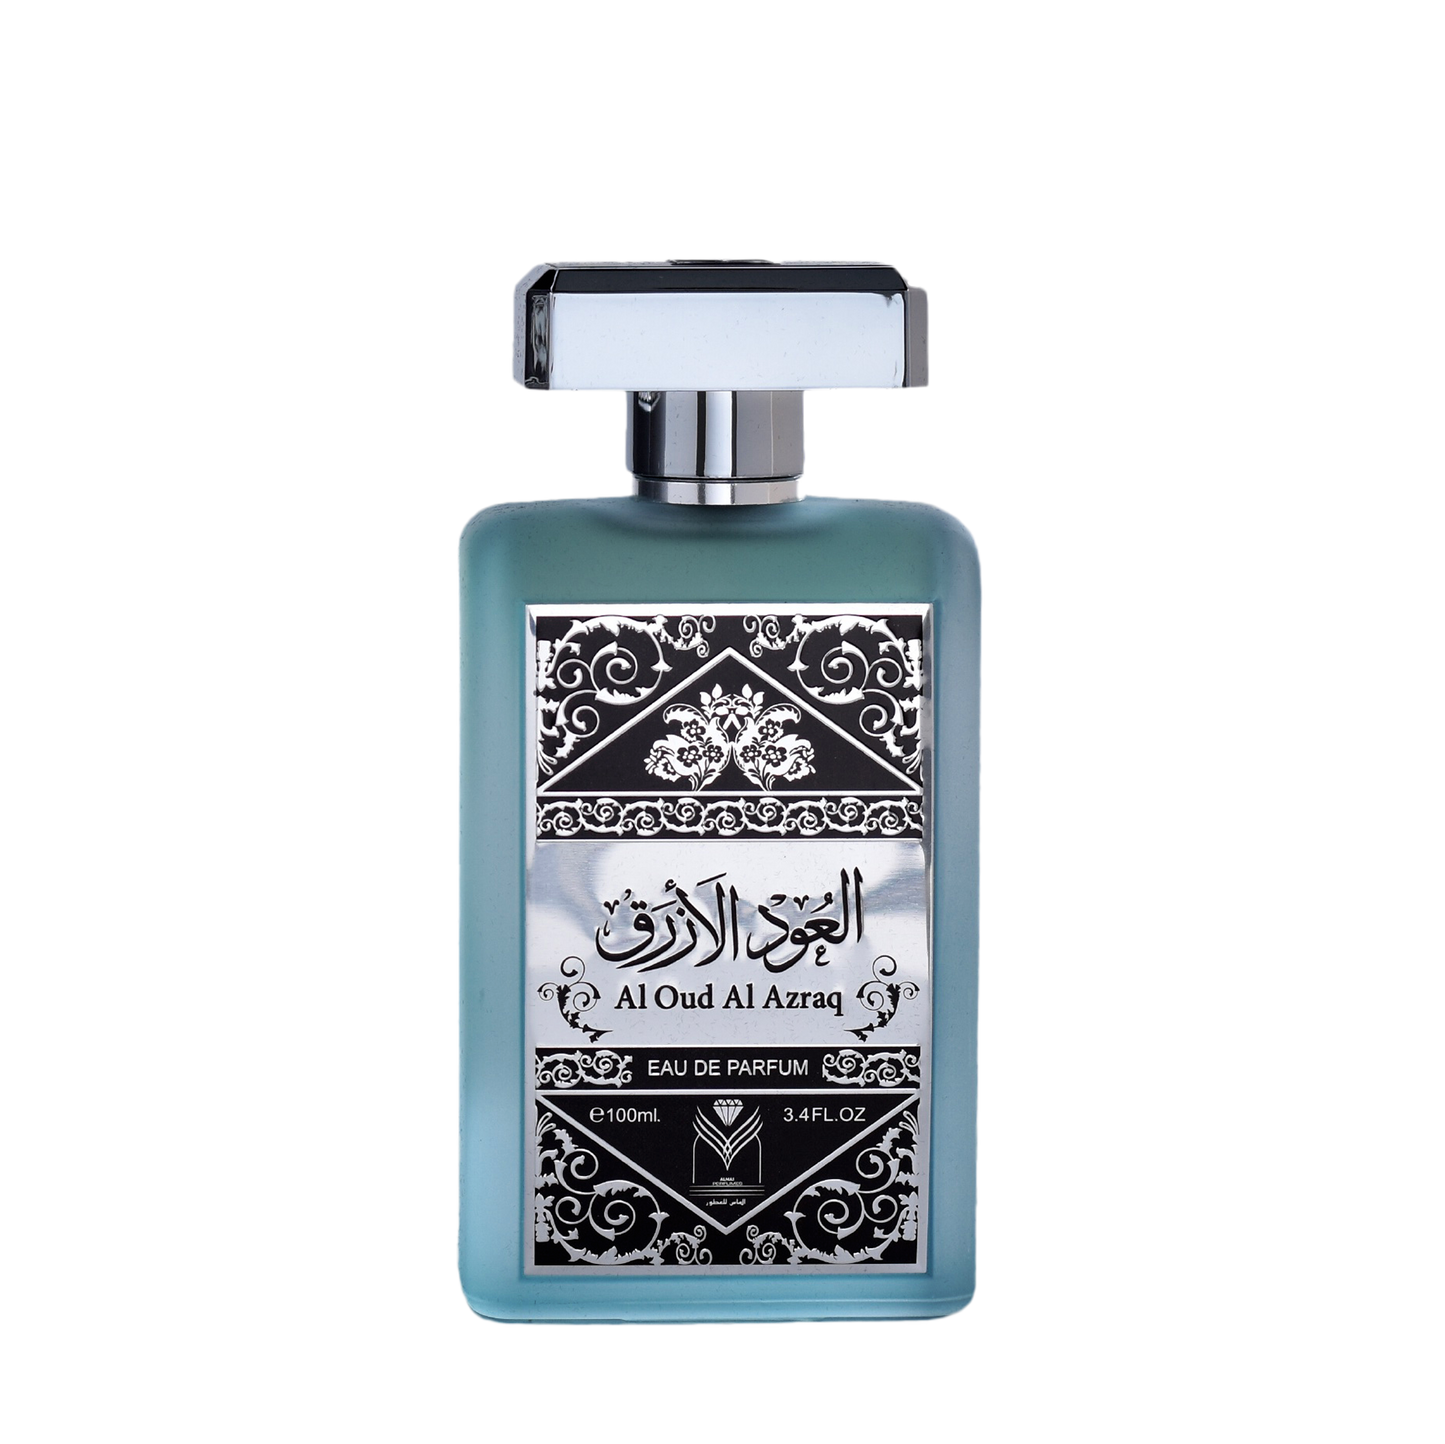 Al Oud Al Azraq Perfume